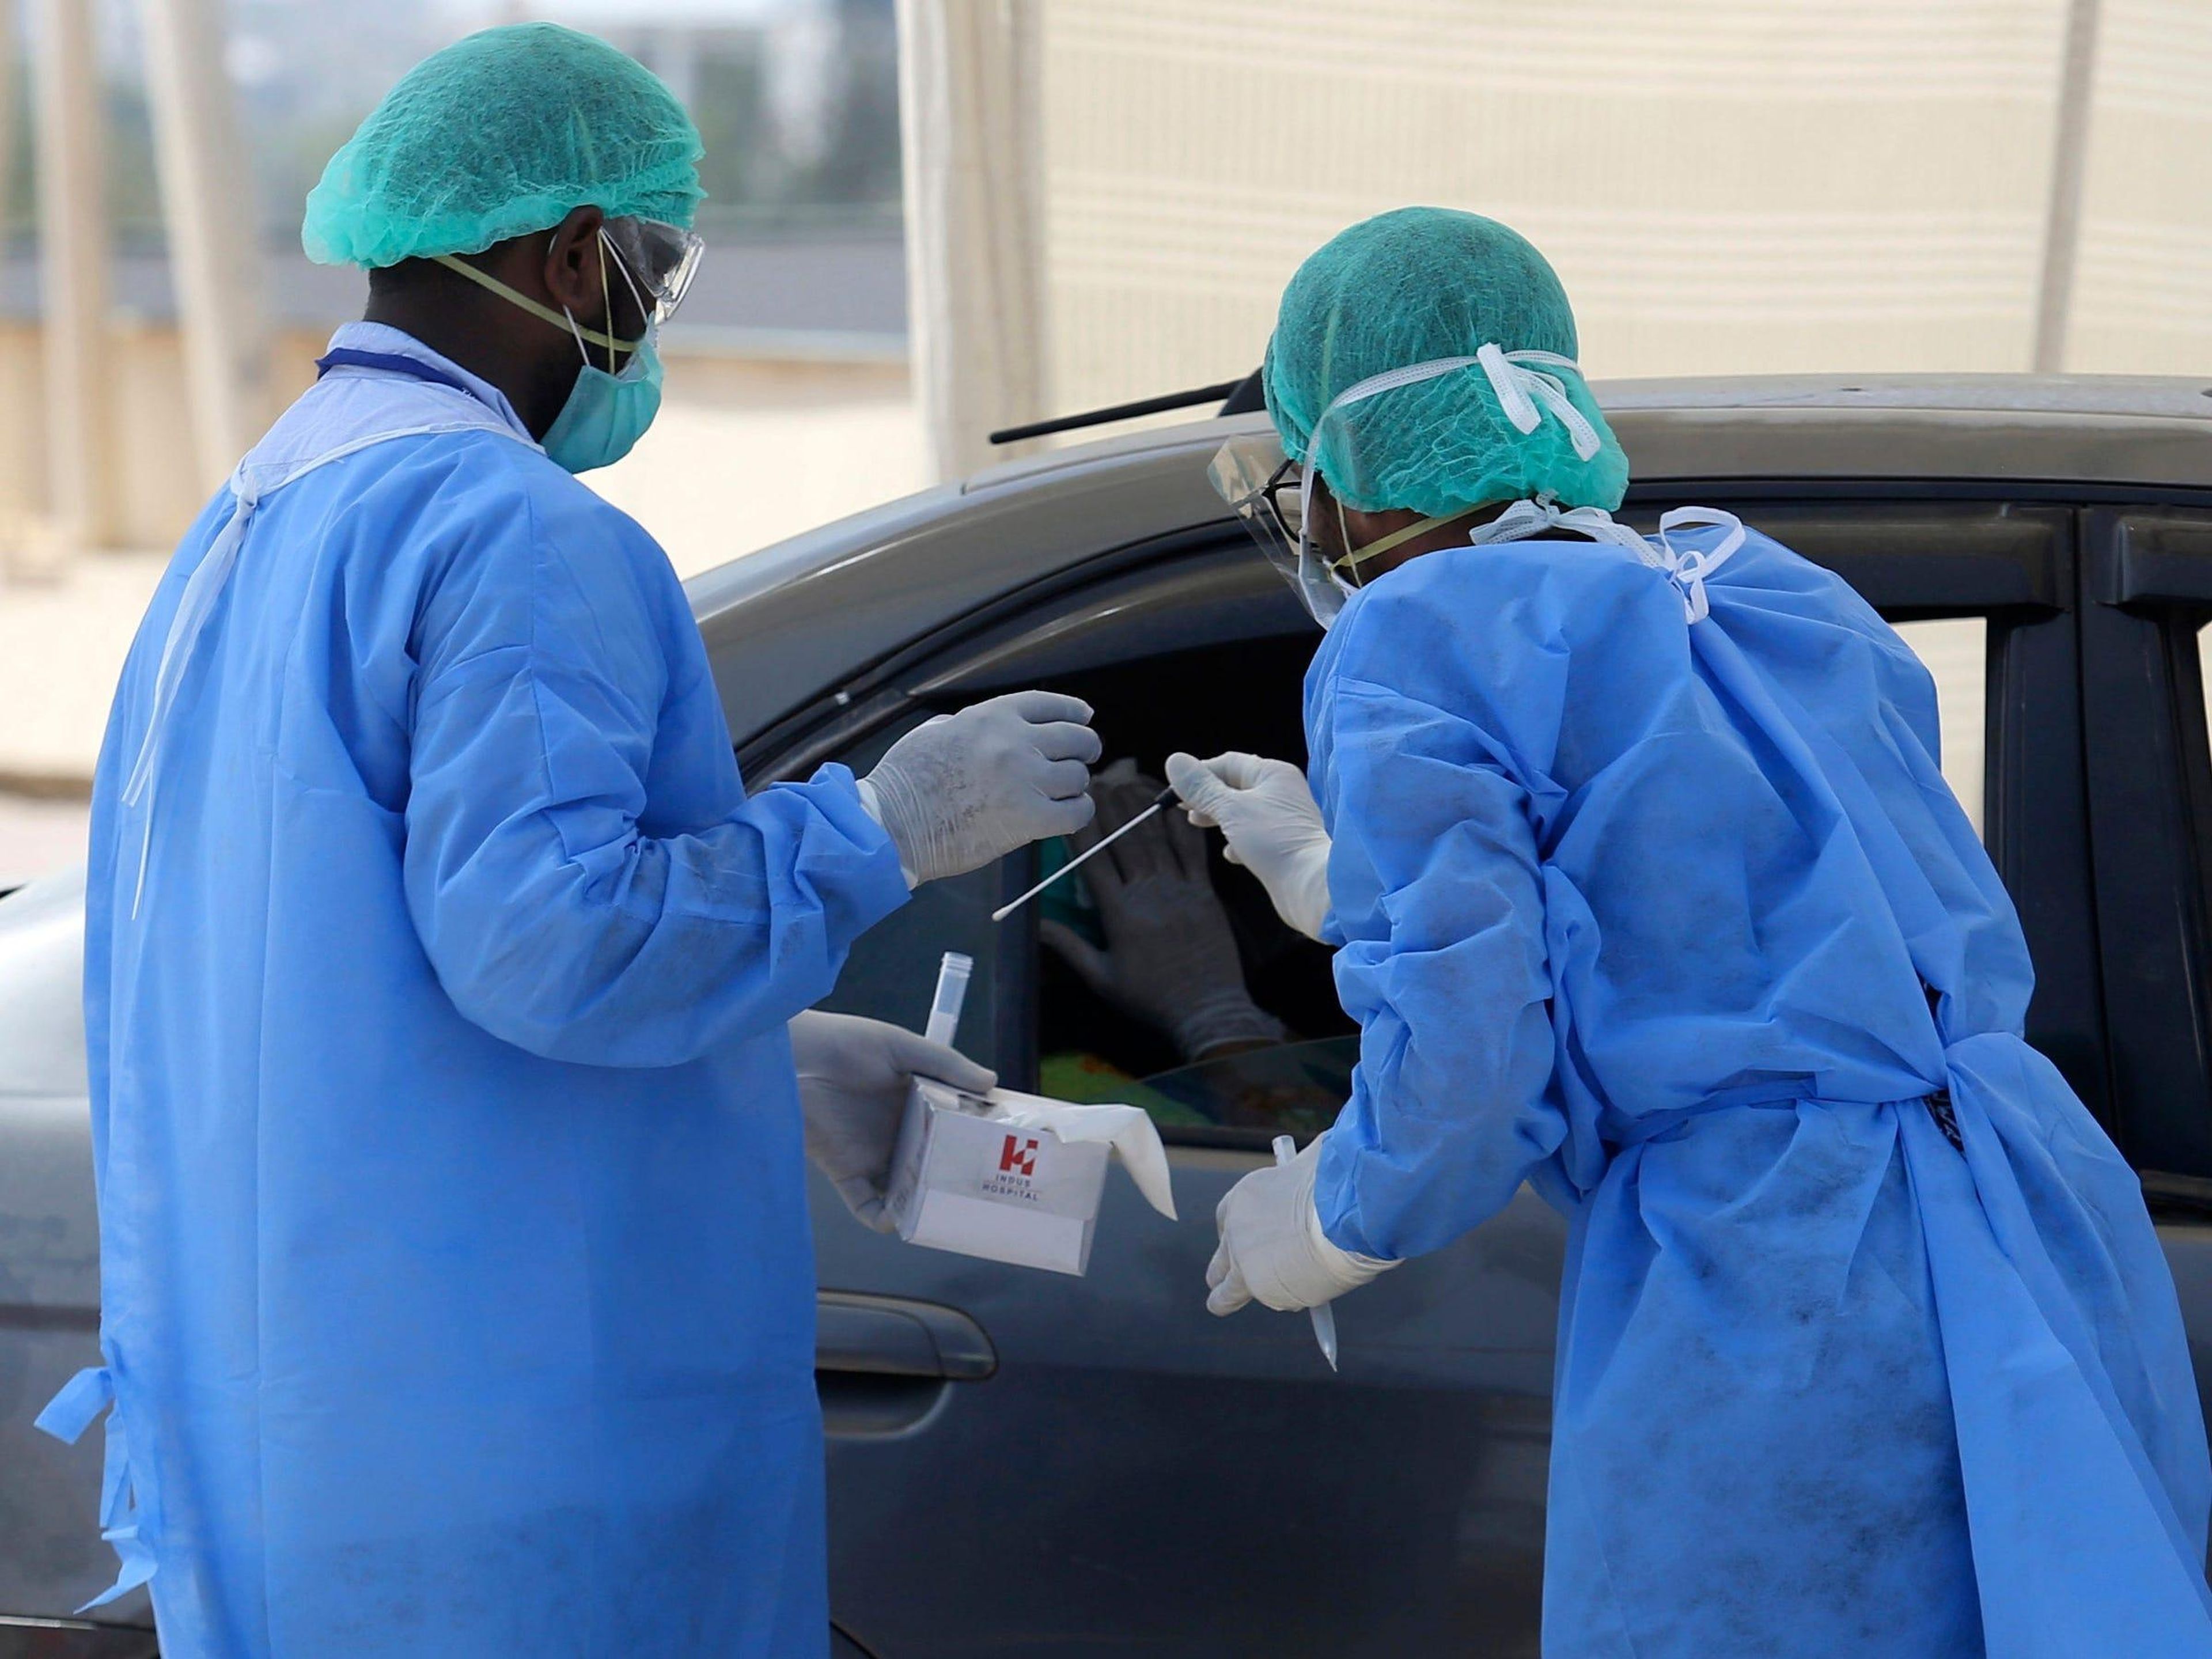 Los trabajadores sanitarios recogen una muestra en un centro de pruebas y detección de COVID-19 en Karachi, Pakistán, el 6 de abril de 2020.